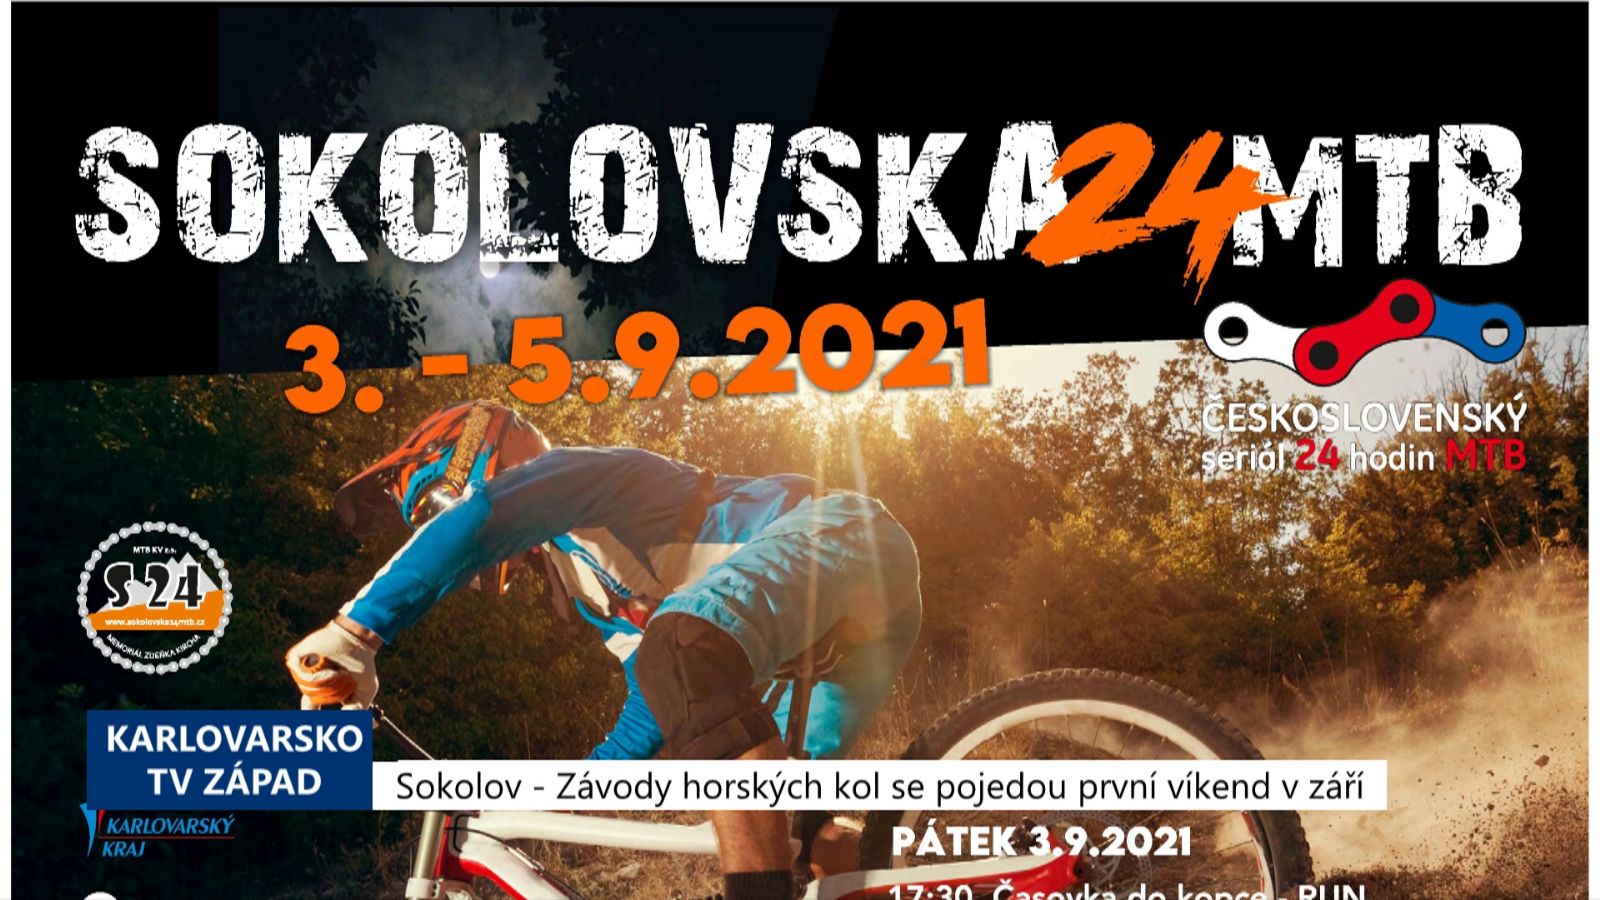 Sokolov: Závody horských kol se pojedou první víkend v září (TV Západ)	